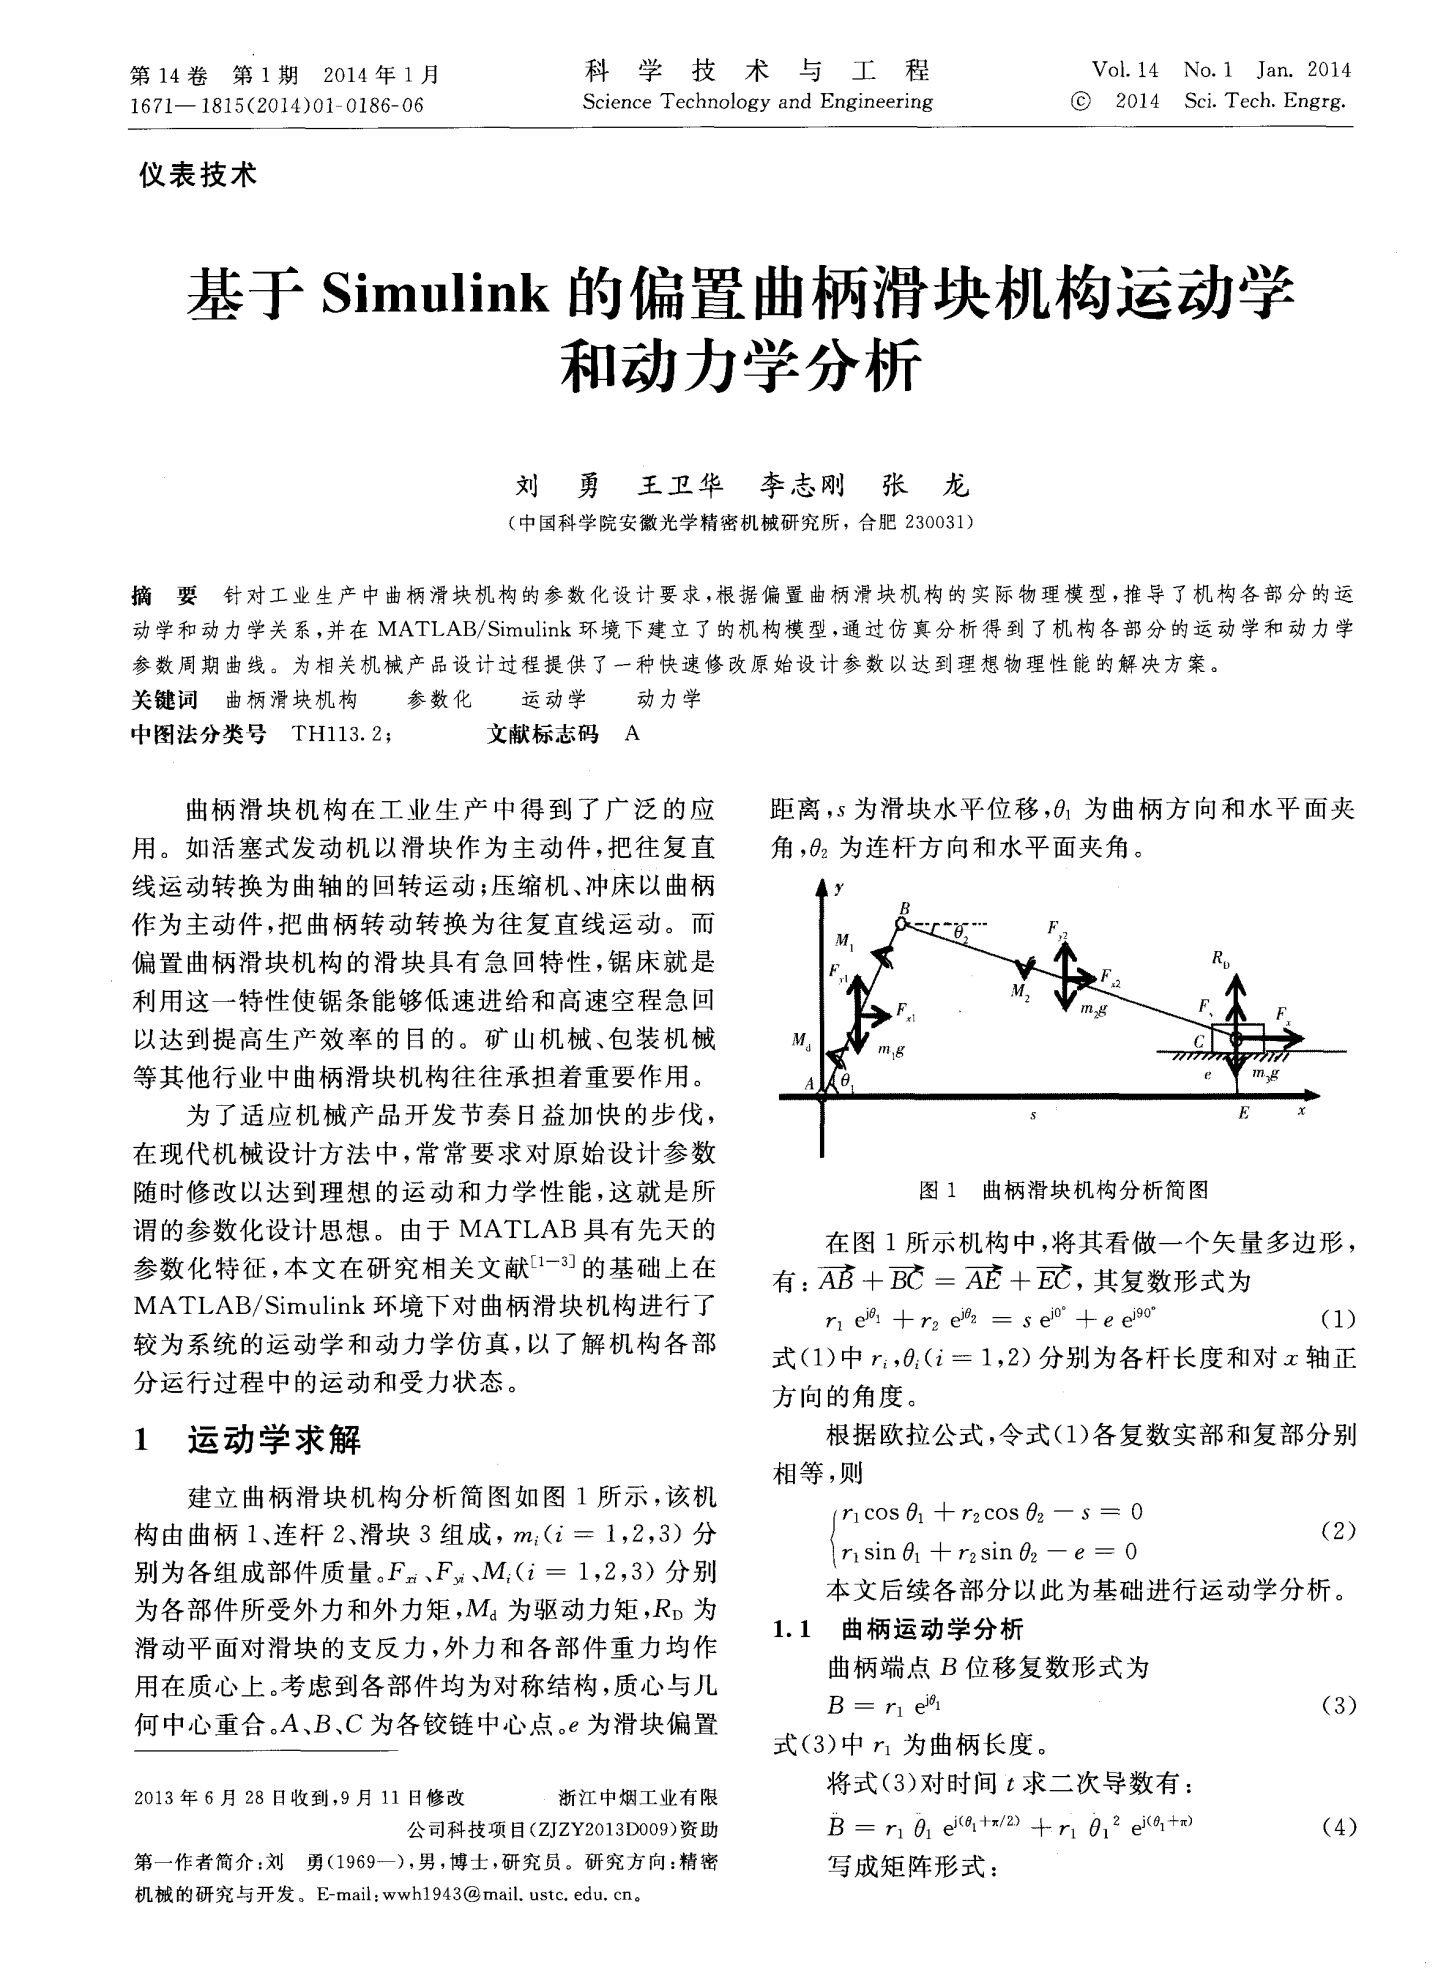 基于Simulink的偏置曲柄滑块机构运动学和动力学分析